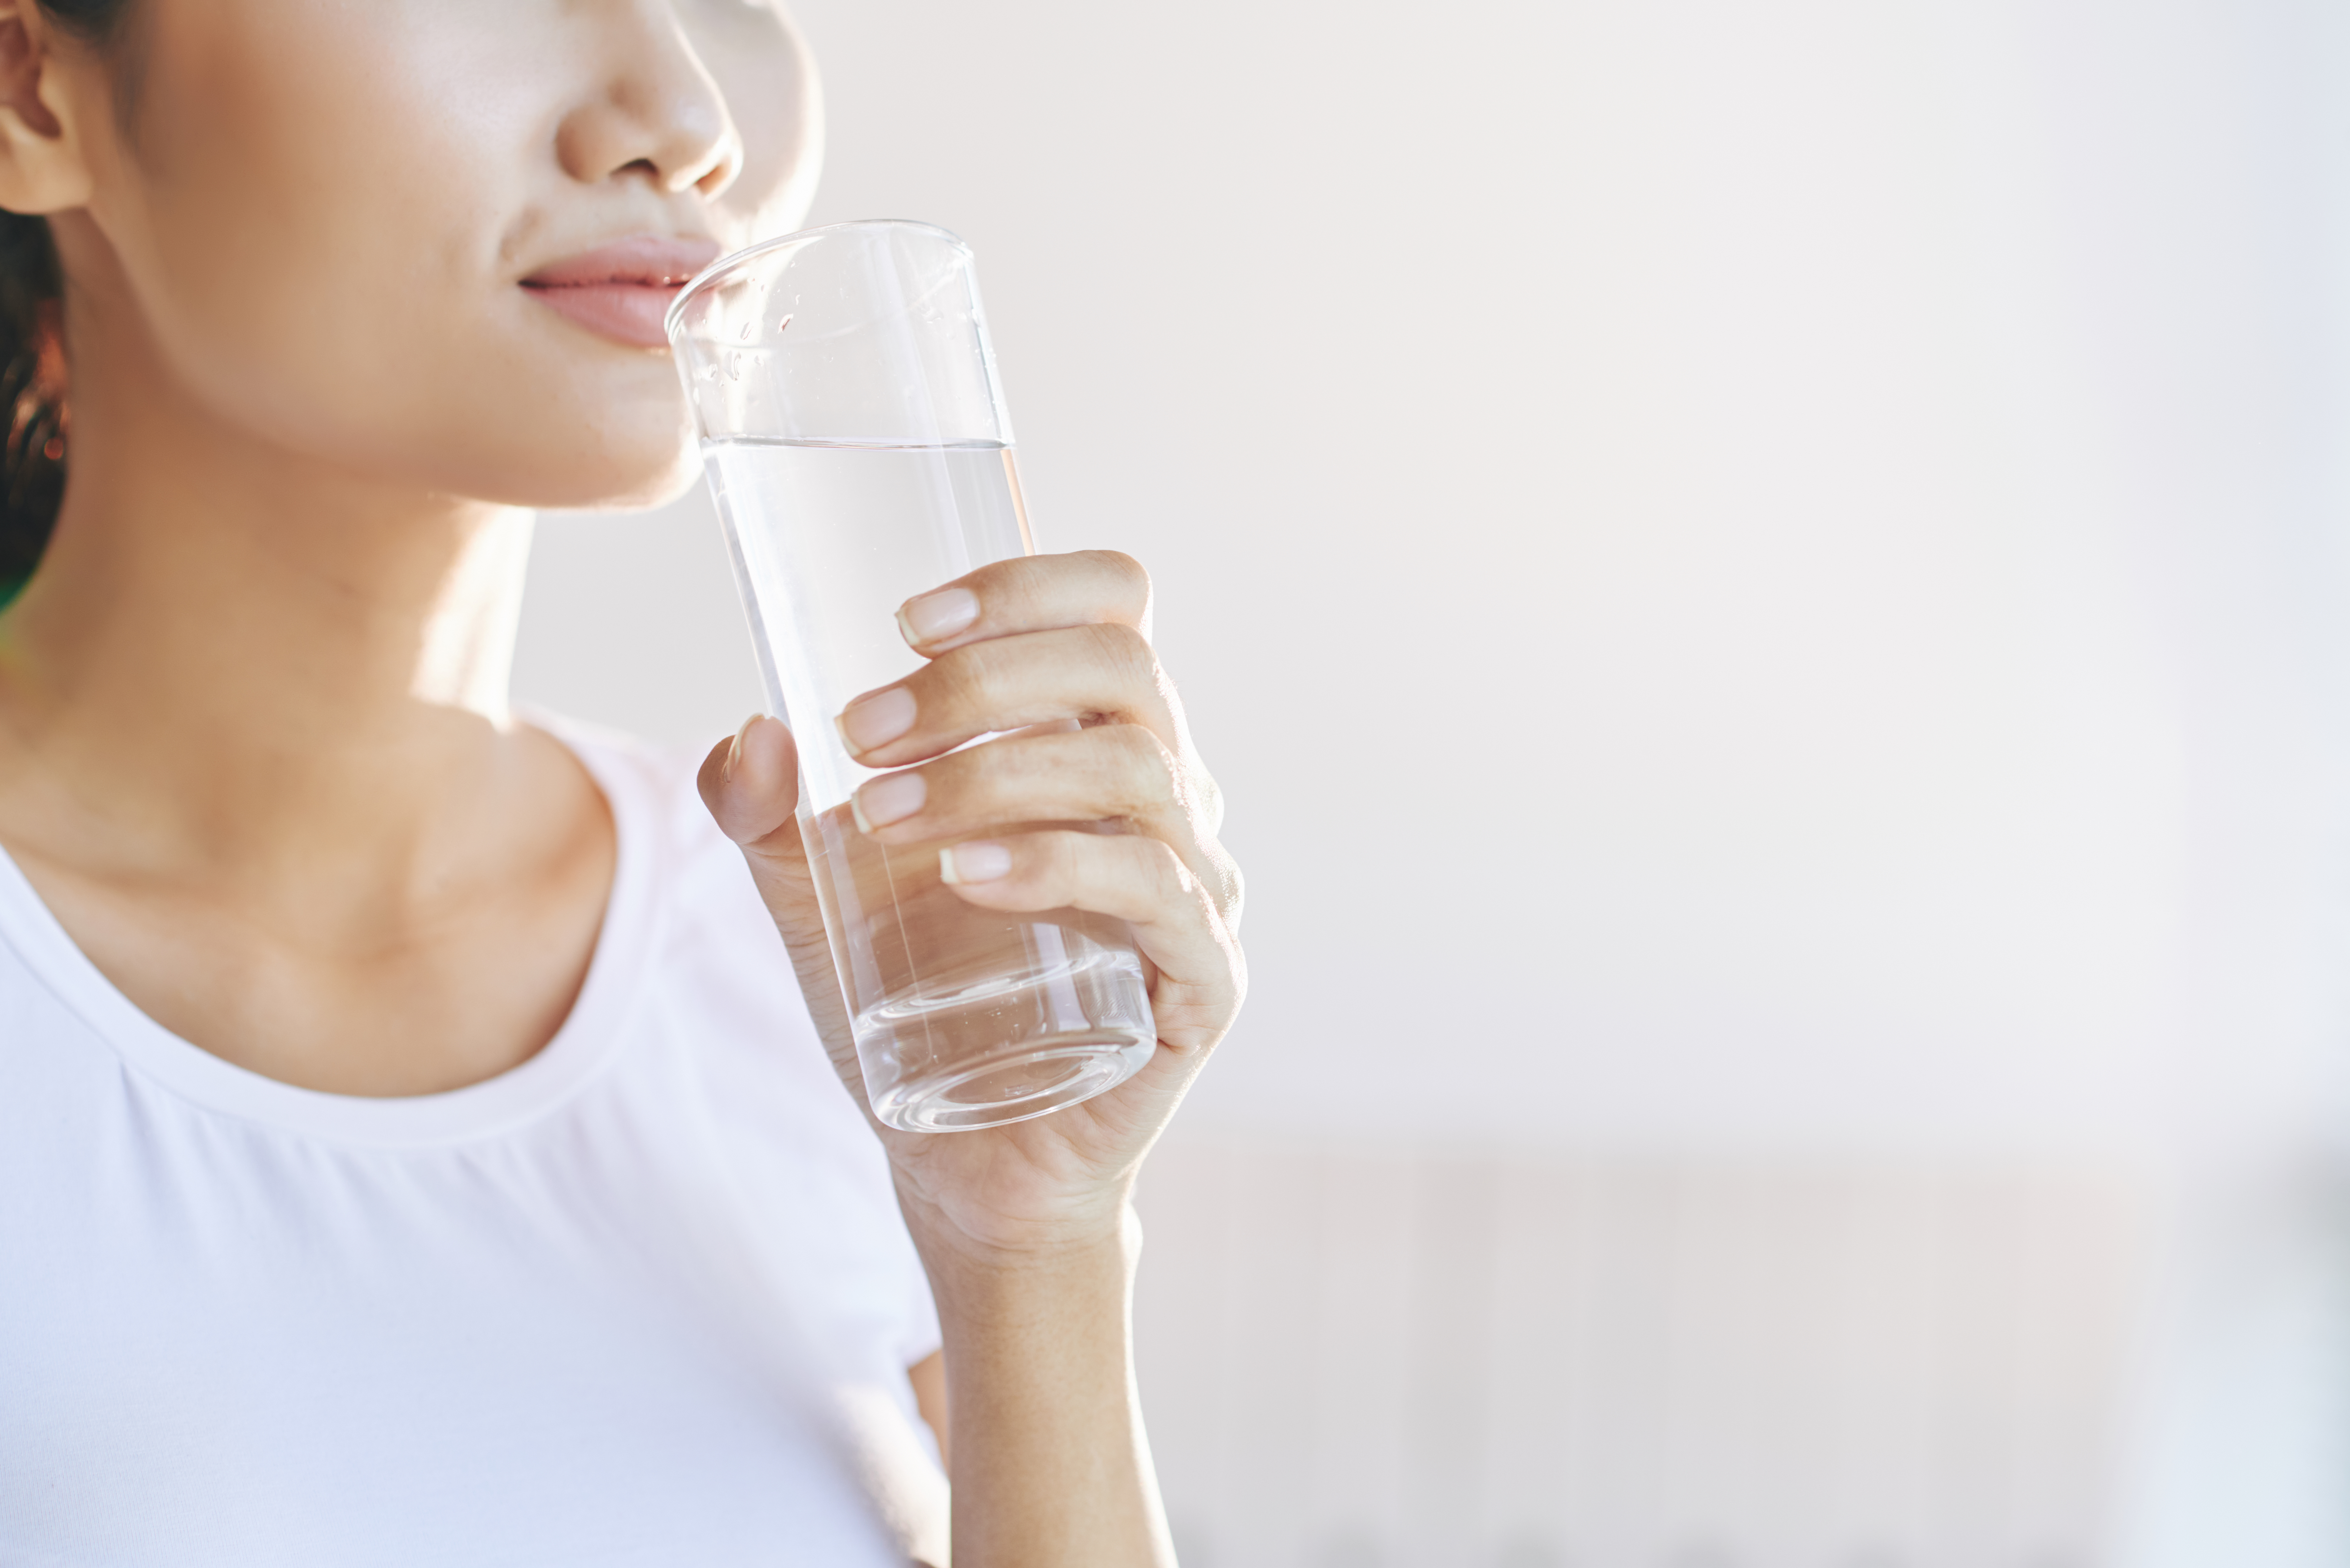 Tidak hanya sebagai pengganti cairan yang hilang melalui keringat, air putih juga berdampak langsung pada berbagai fungsi tubuh secara keseluruhan